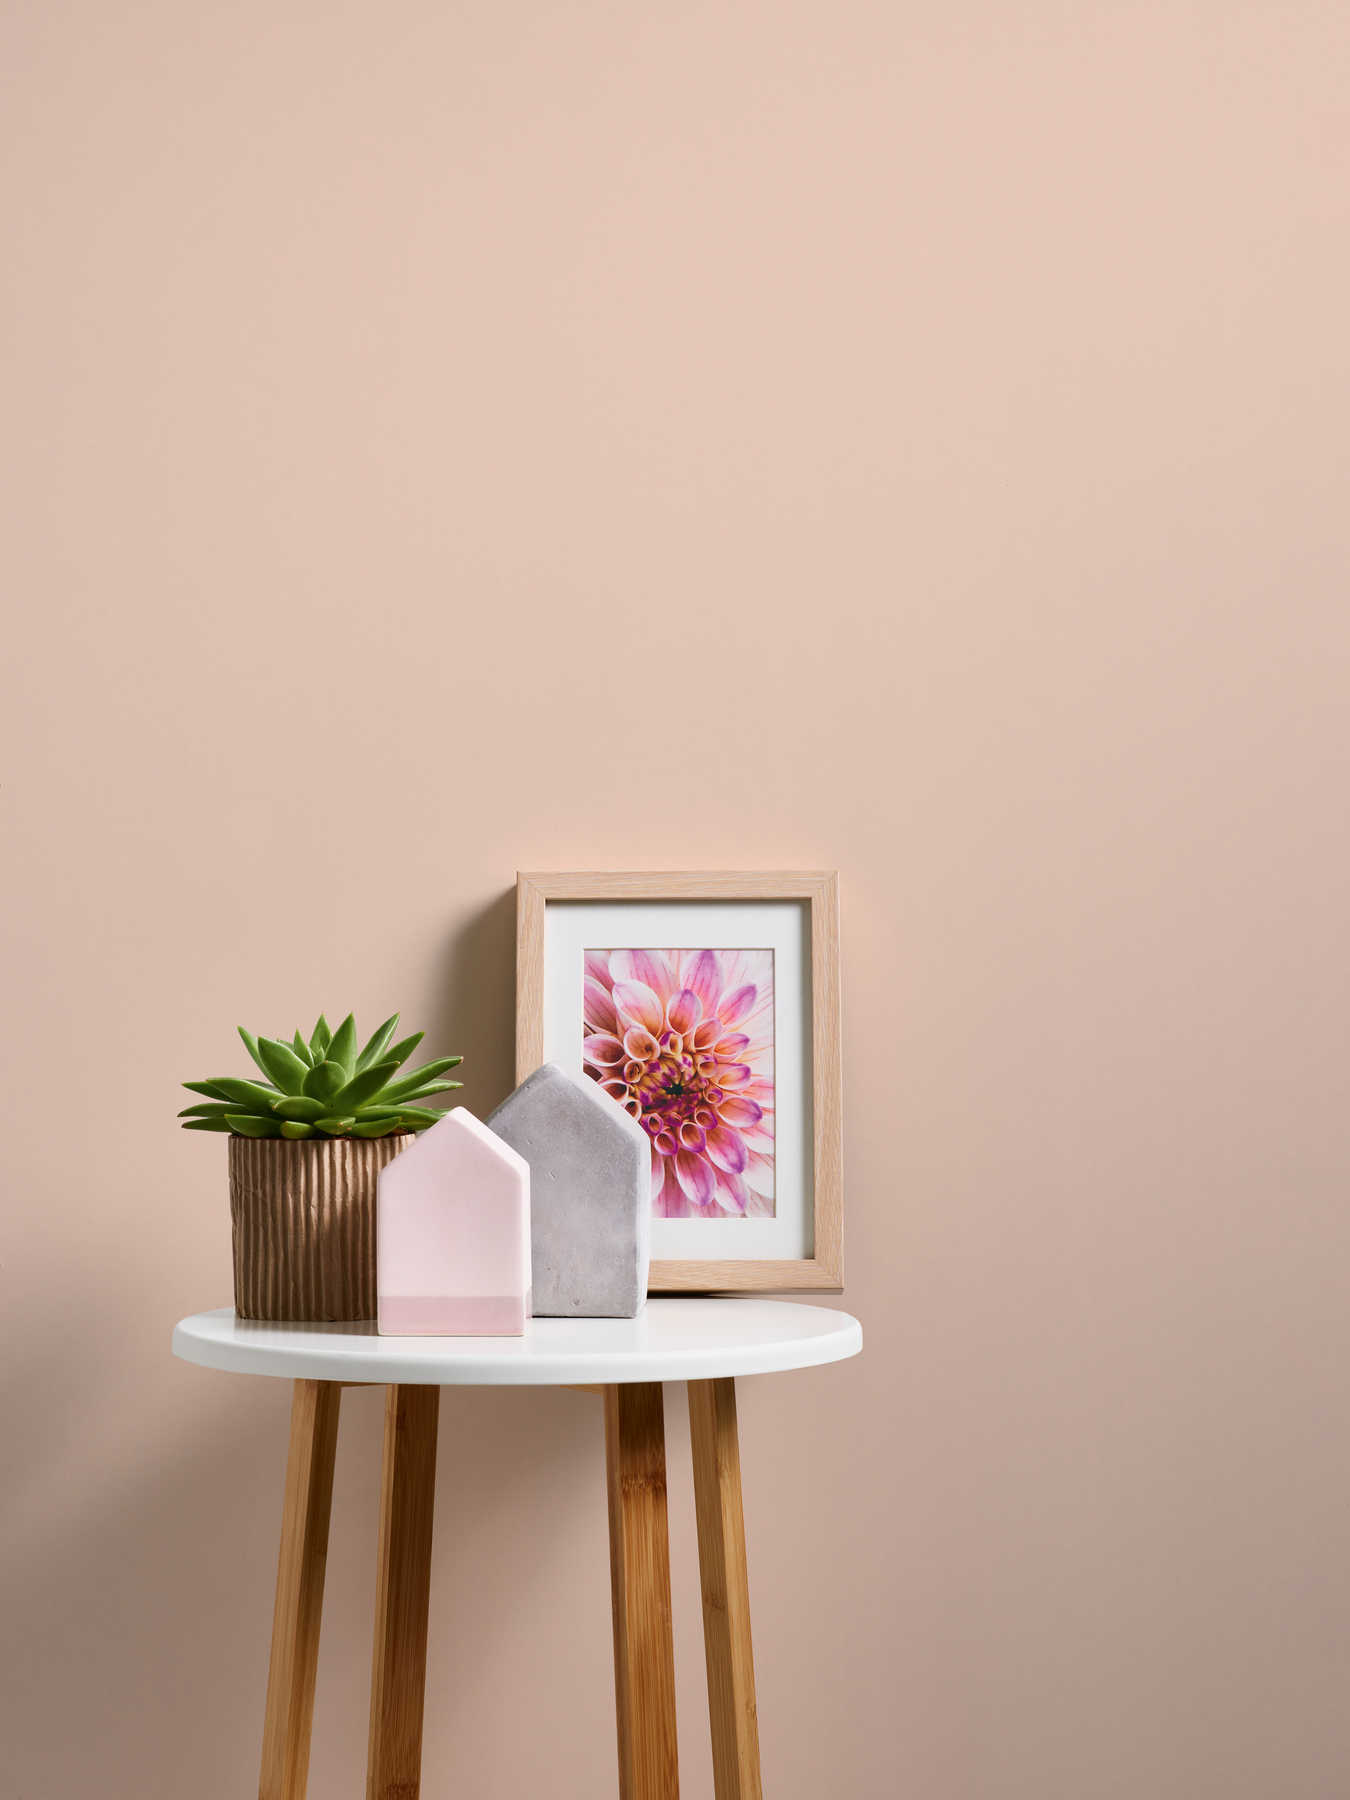             Papier peint uni avec surface mate - crème, rose
        